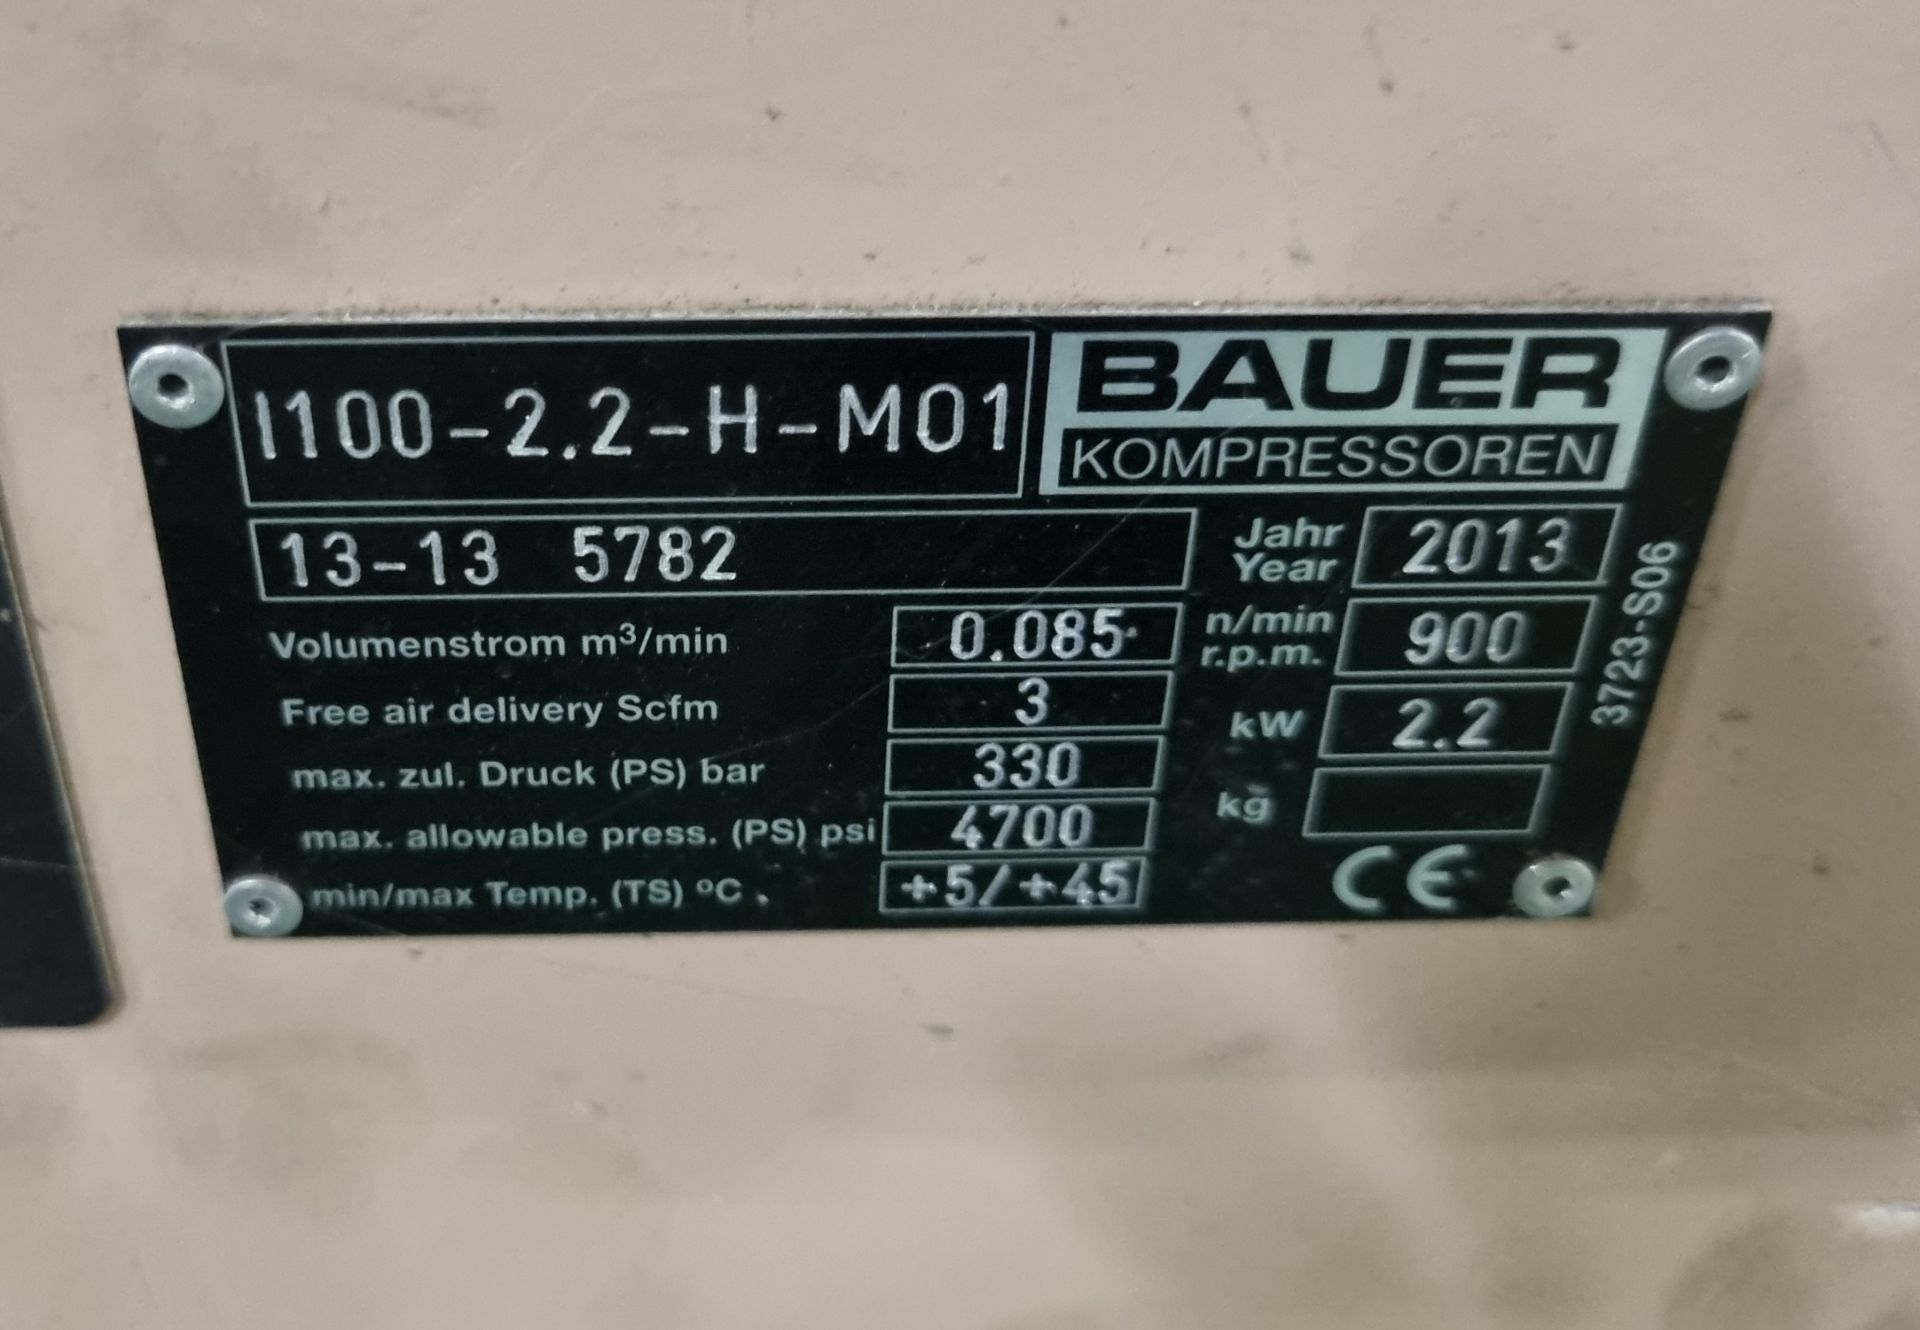 Bauer 100-2.2-H-M01 Compressor & Kompressoren CPF450-M01 cylinder refill system - Image 6 of 16